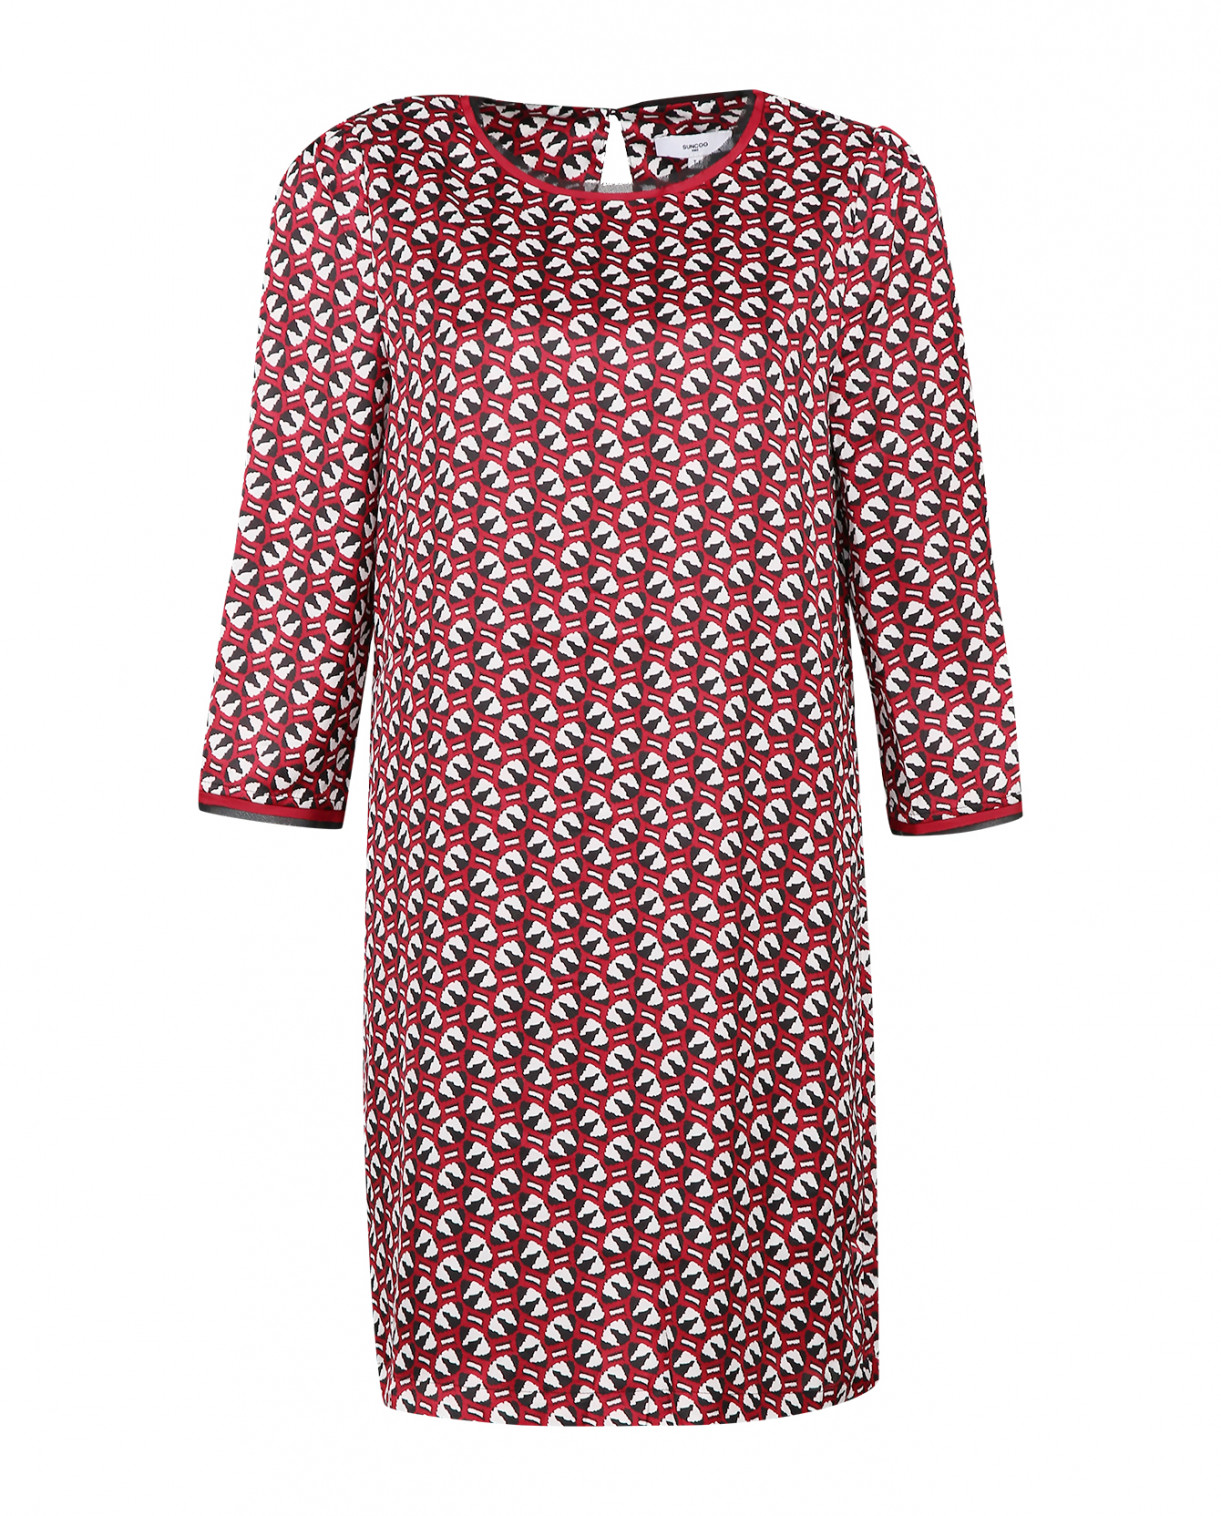 Платье-мини прямого фасона с принтом Suncoo  –  Общий вид  – Цвет:  Красный